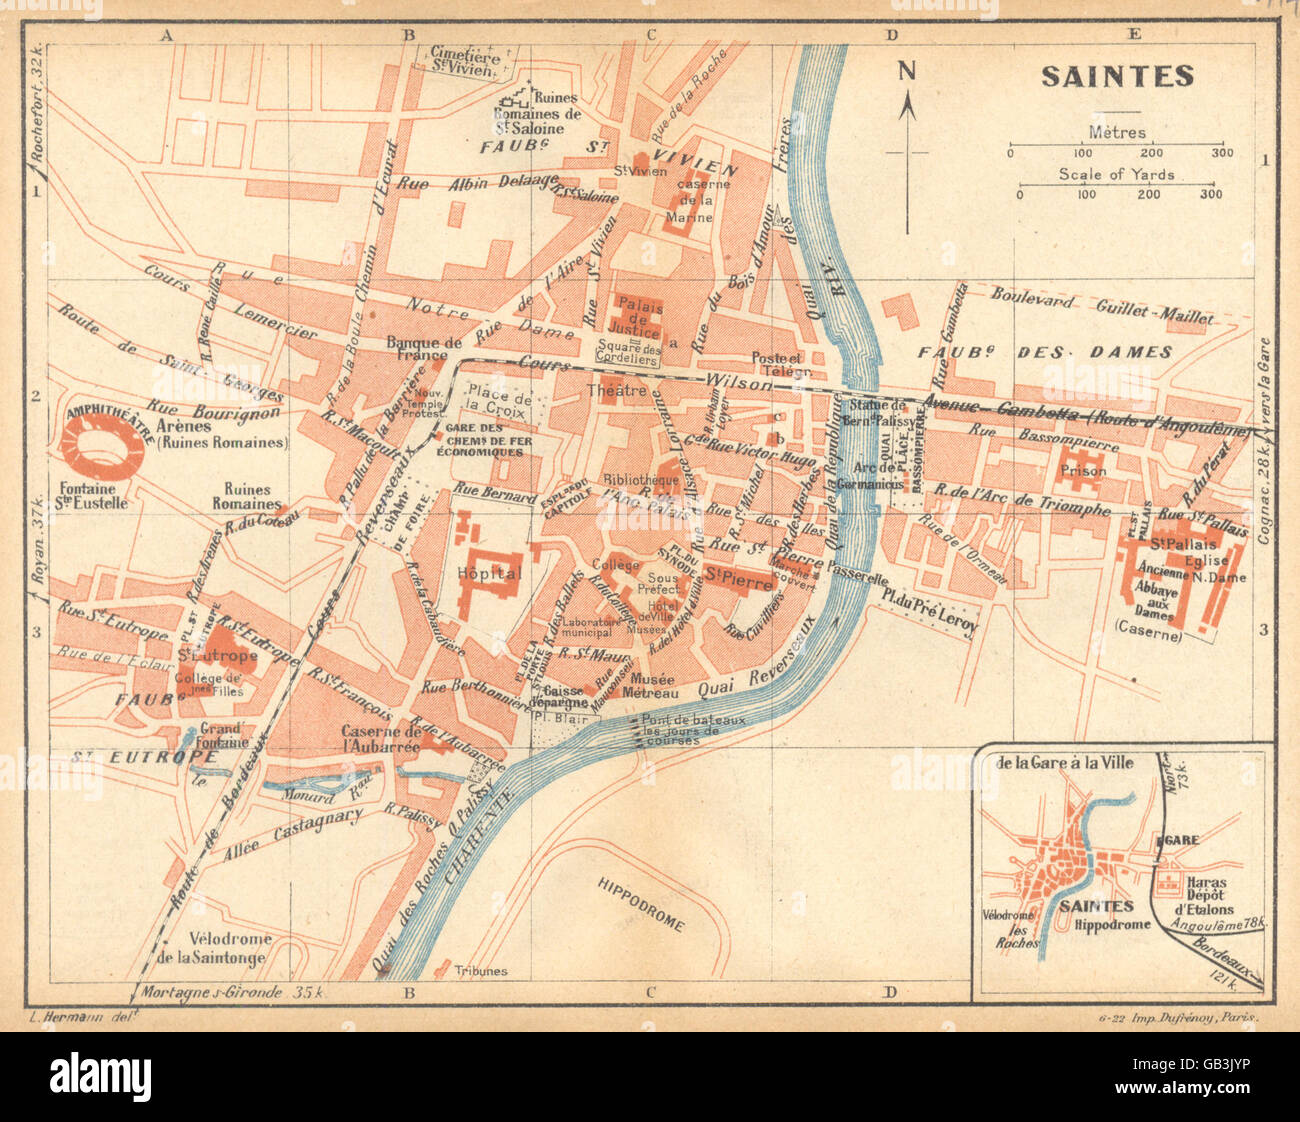 CHARENTE-MARITIME: Saintes; Nebenkarte des Saintes, 1922 Stockfoto